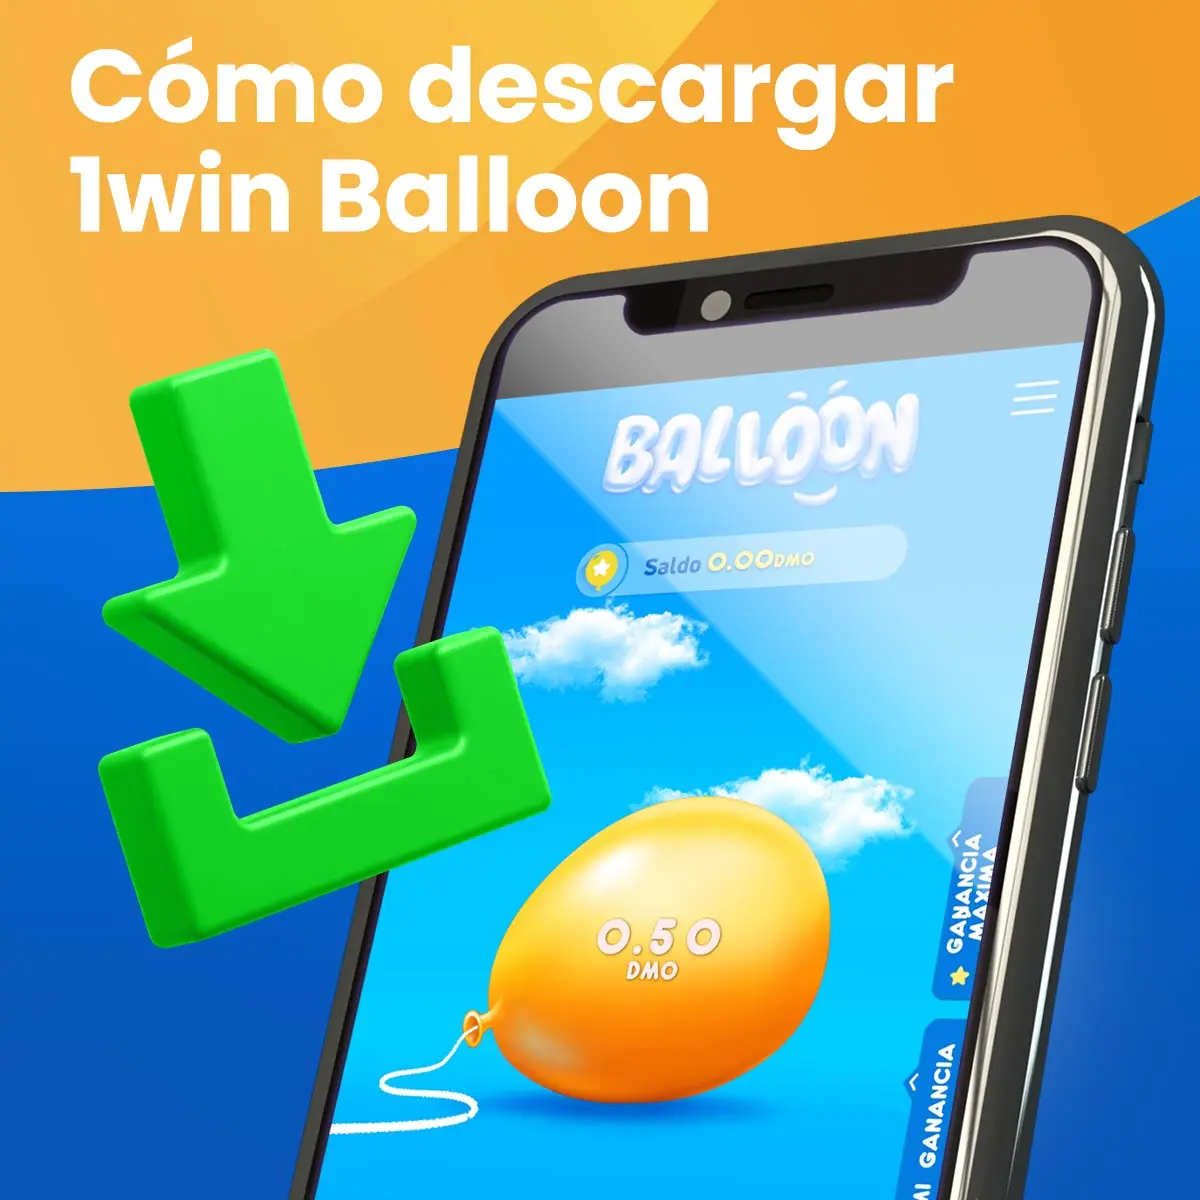 Instrucciones paso a paso para descargar la aplicación Balloon 1Win